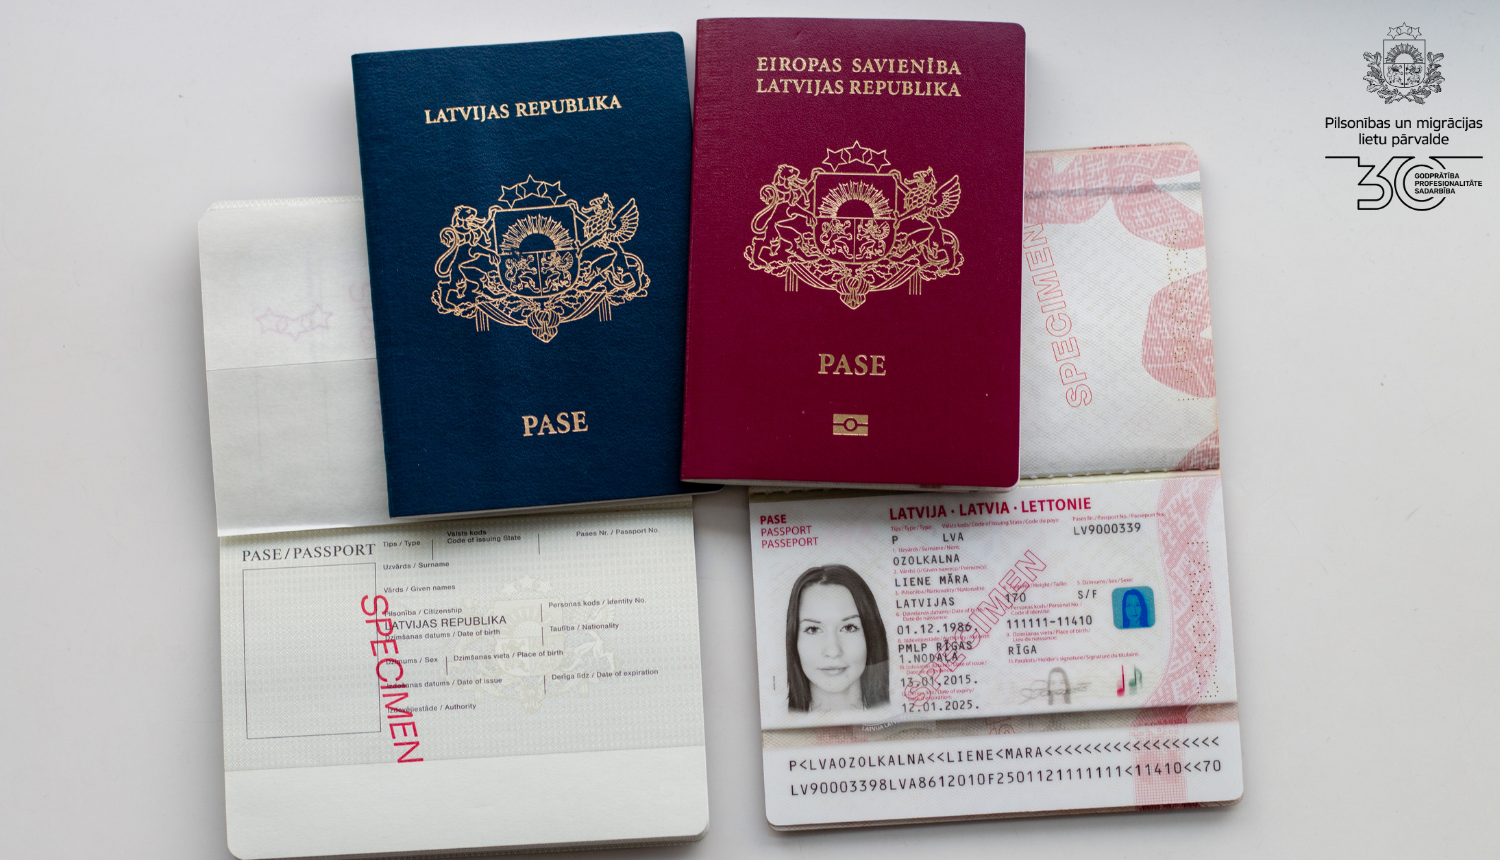 Uz galda četras pases: Latvijas pilsoņa un Latvijas nepilsoņa pases, UN DIVAS PASES ATVĒRTĀ VEIDĀ